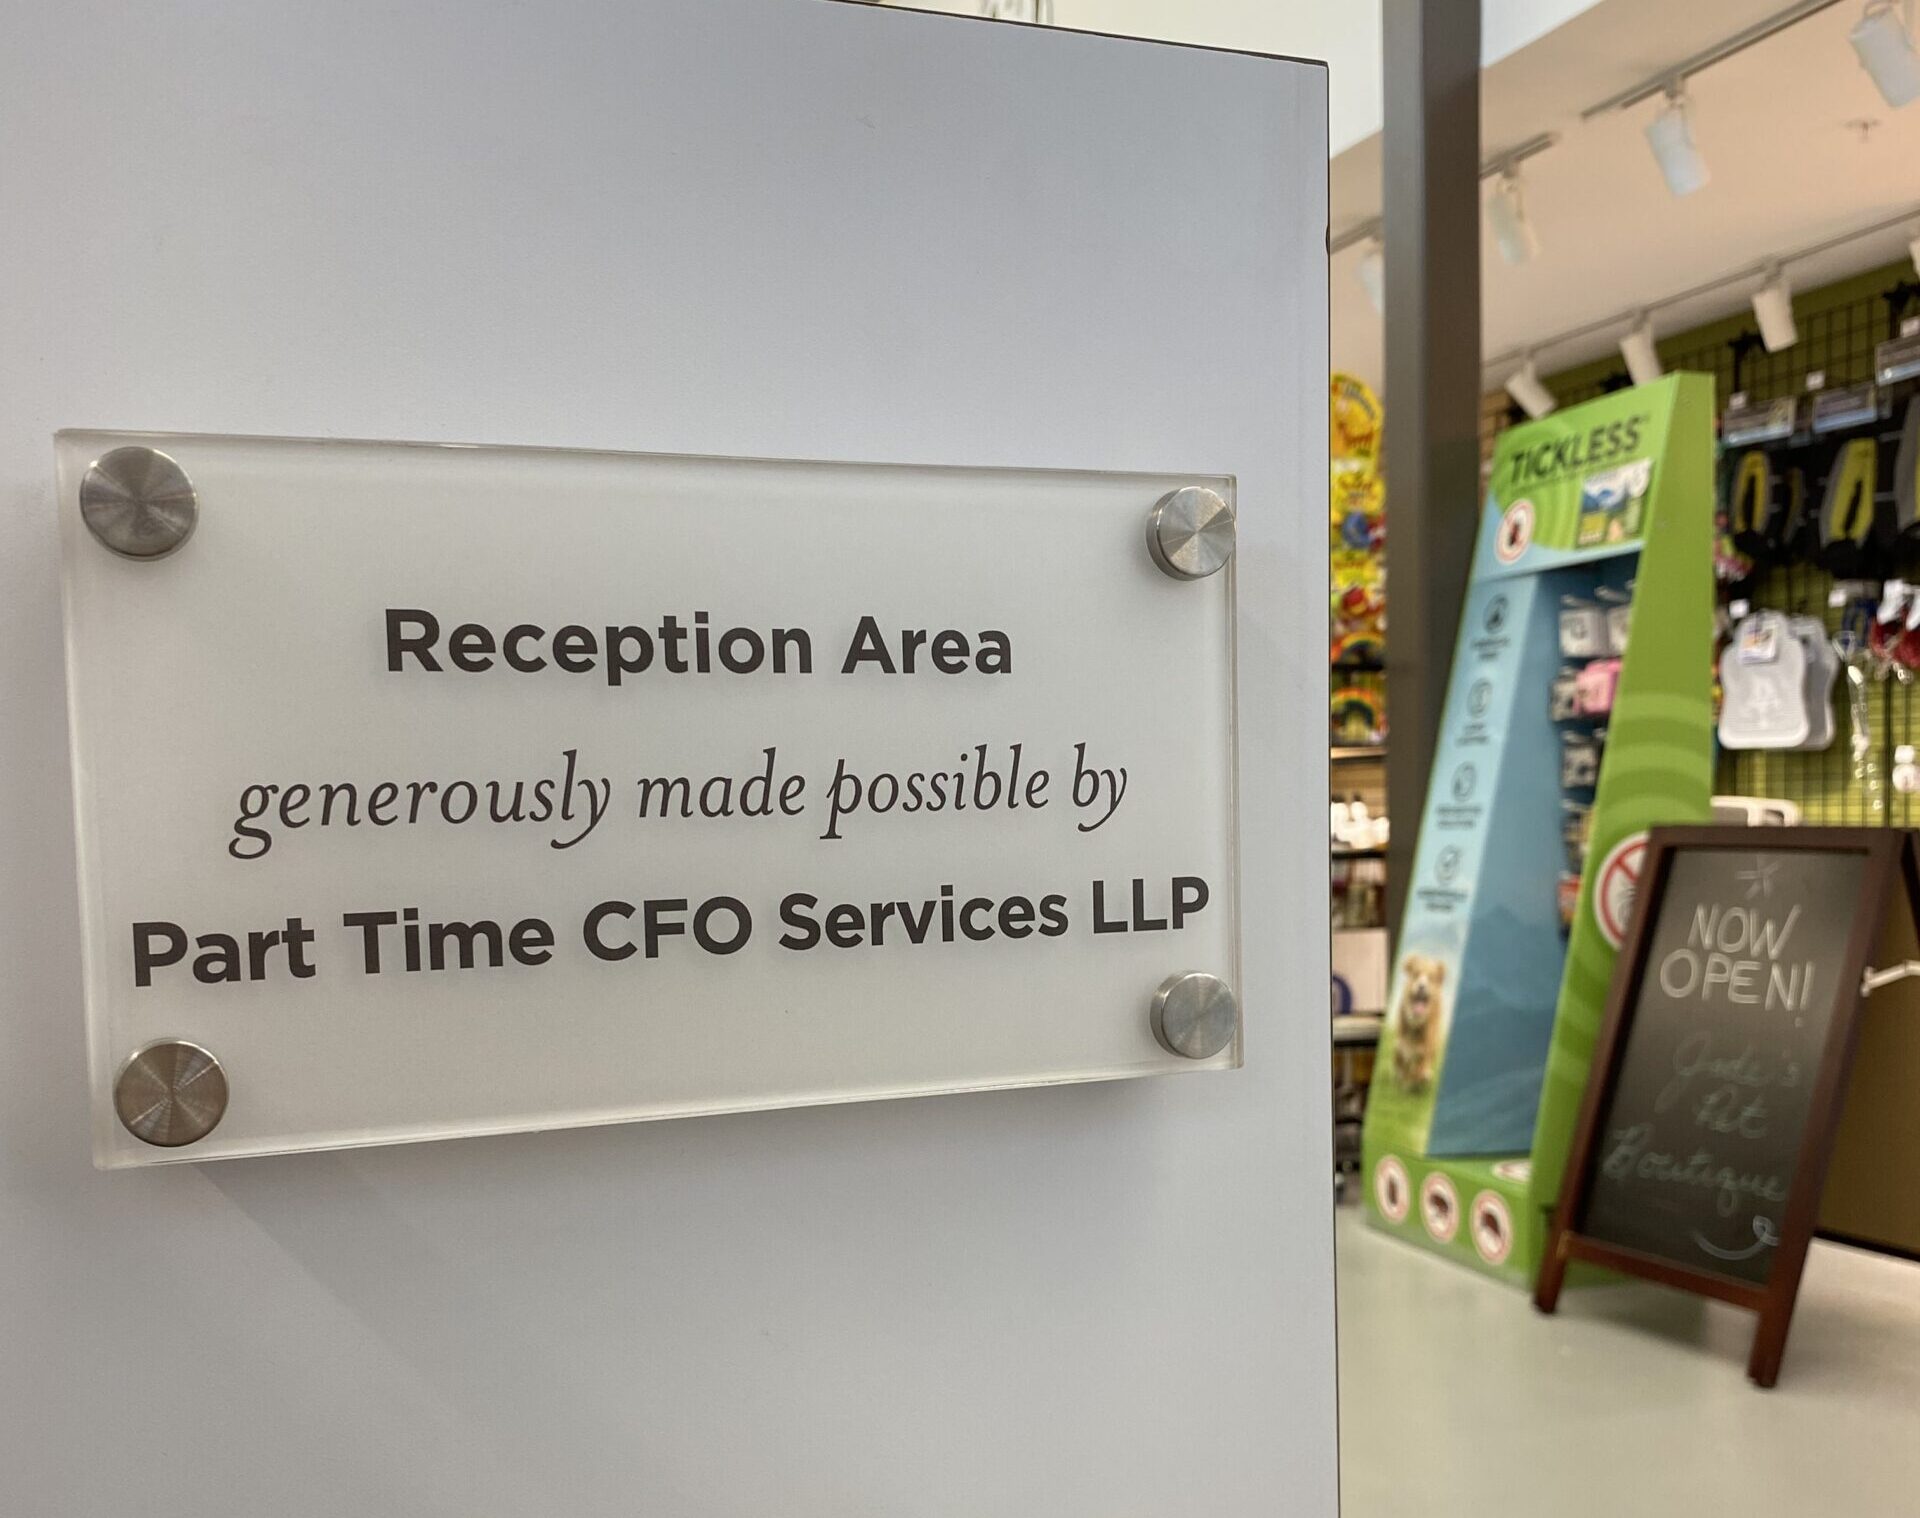 Part Time CFO Services LLP Reception Area Plaque